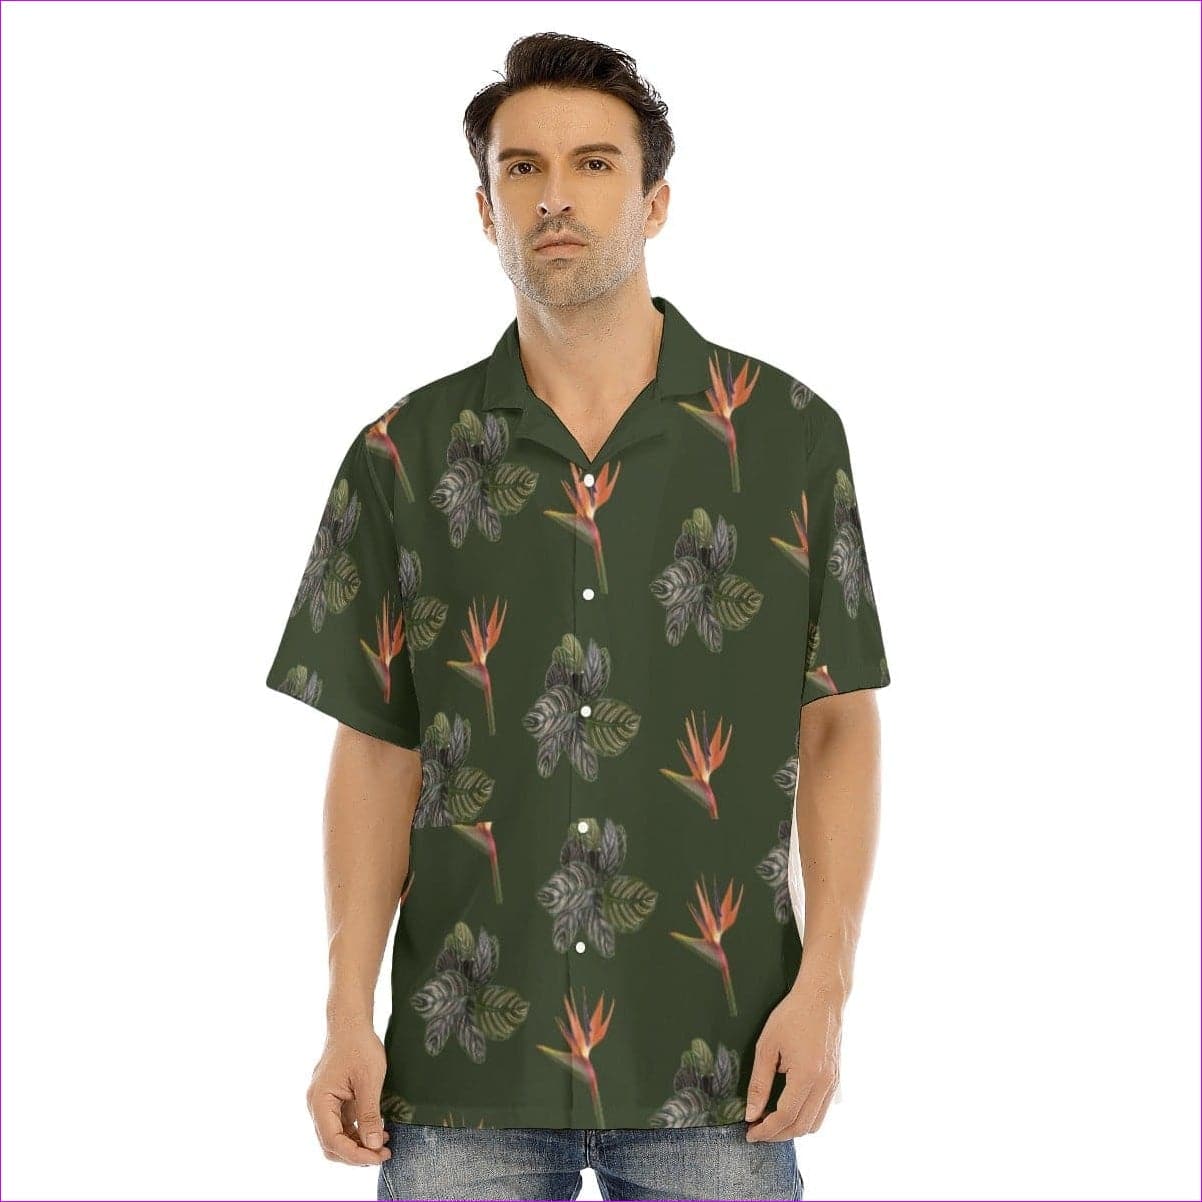 - Paradise Men's Army Green Hawaiian Shirt With Button Closure - mens hawaiian shirt at TFC&H Co.